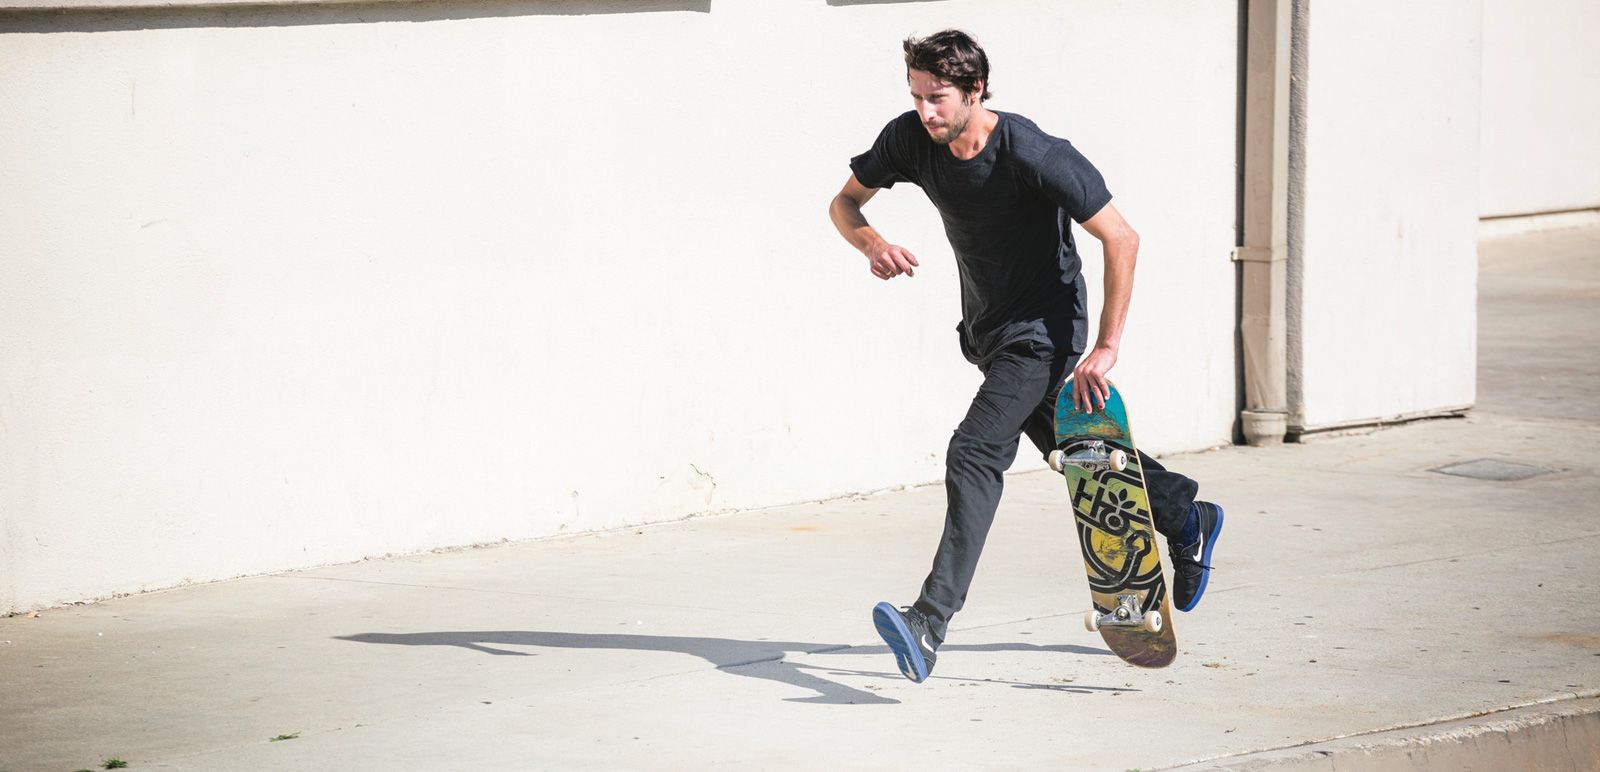 Sacramento Skater Janoski Gets Own Signature Shoe | Submerge Magazine | Music Art + Lifestyle